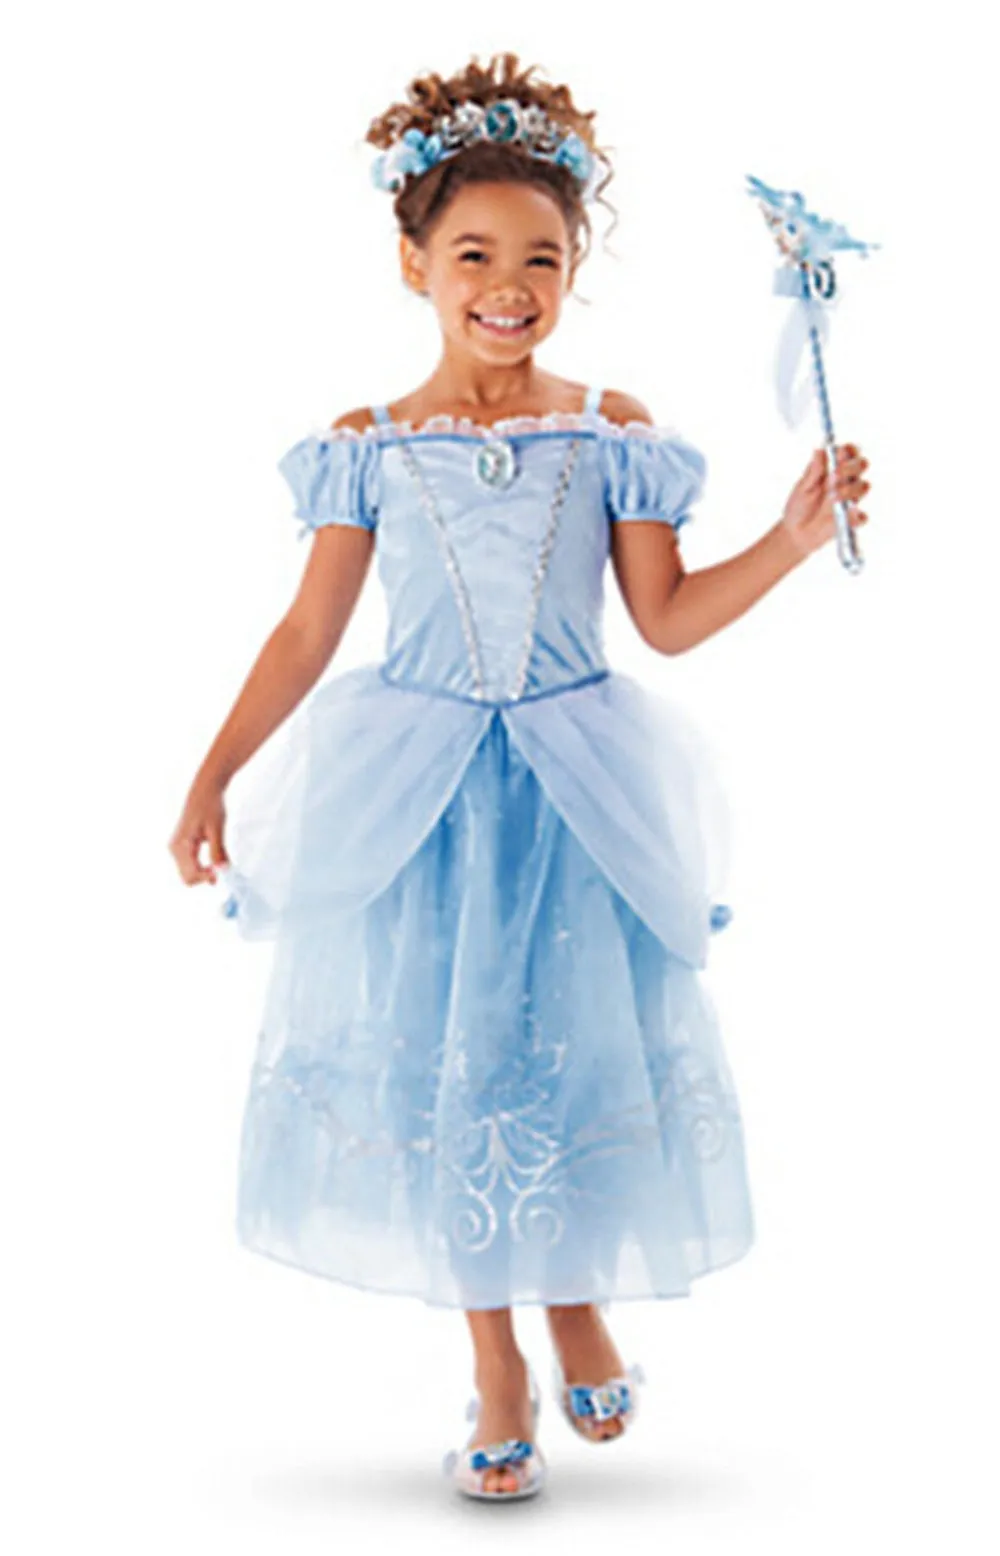 Новое летнее платье Эльзы для девочек в стиле Рапунцель вечерние платья детское платье принцессы Софии Детский костюм подружки невесты